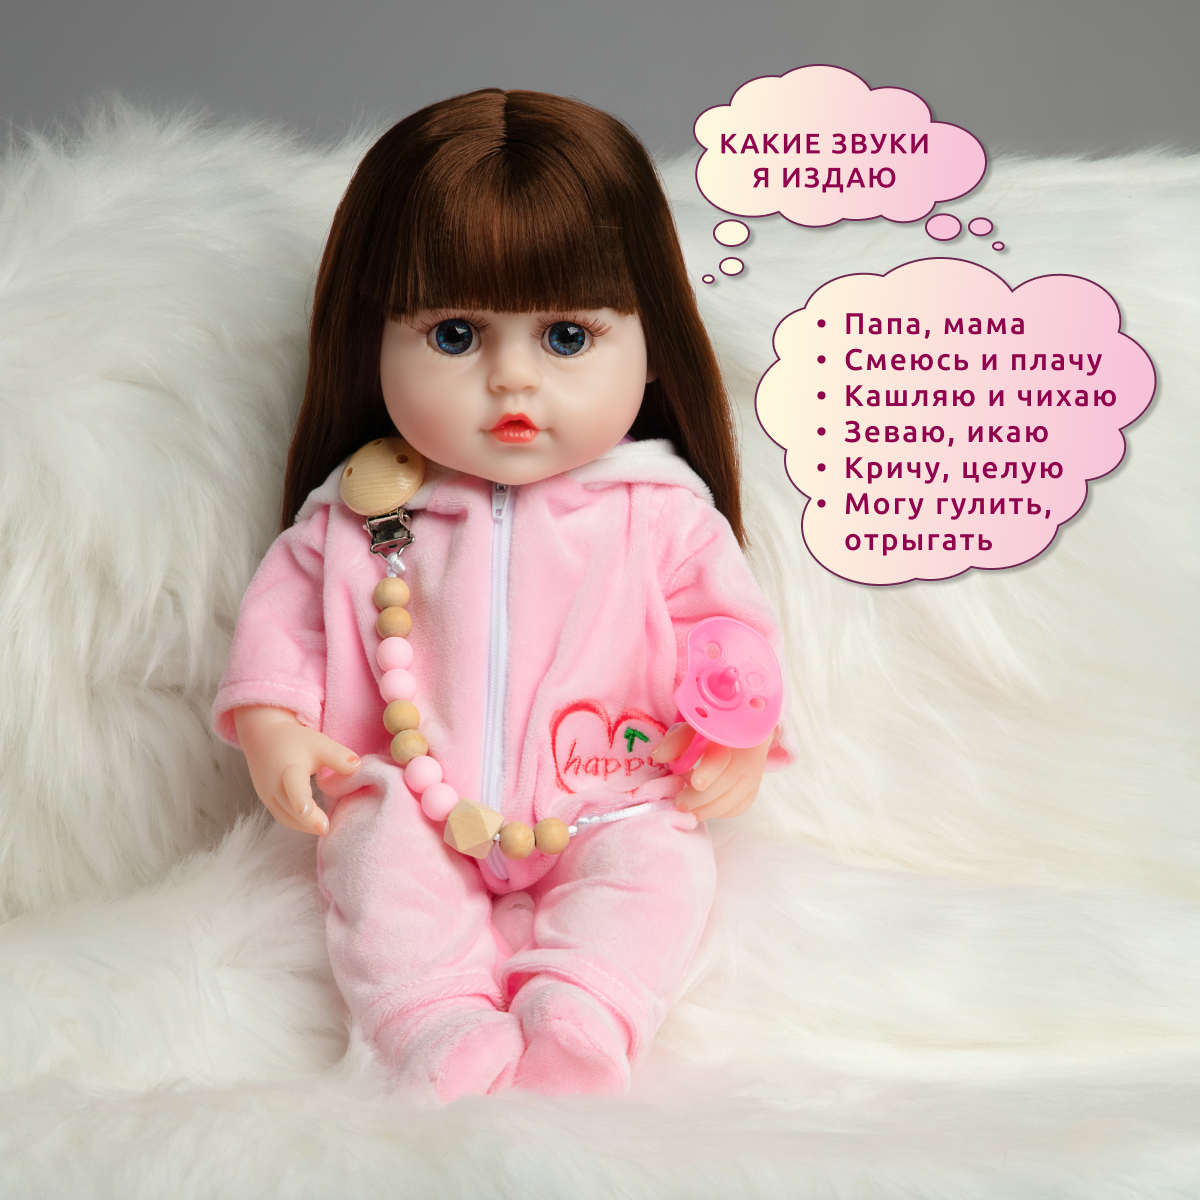 Кукла Реборн QA BABY Альбина девочка интерактивная Пупс набор игрушки для ванной для девочки 38 см 3805 - фото 3